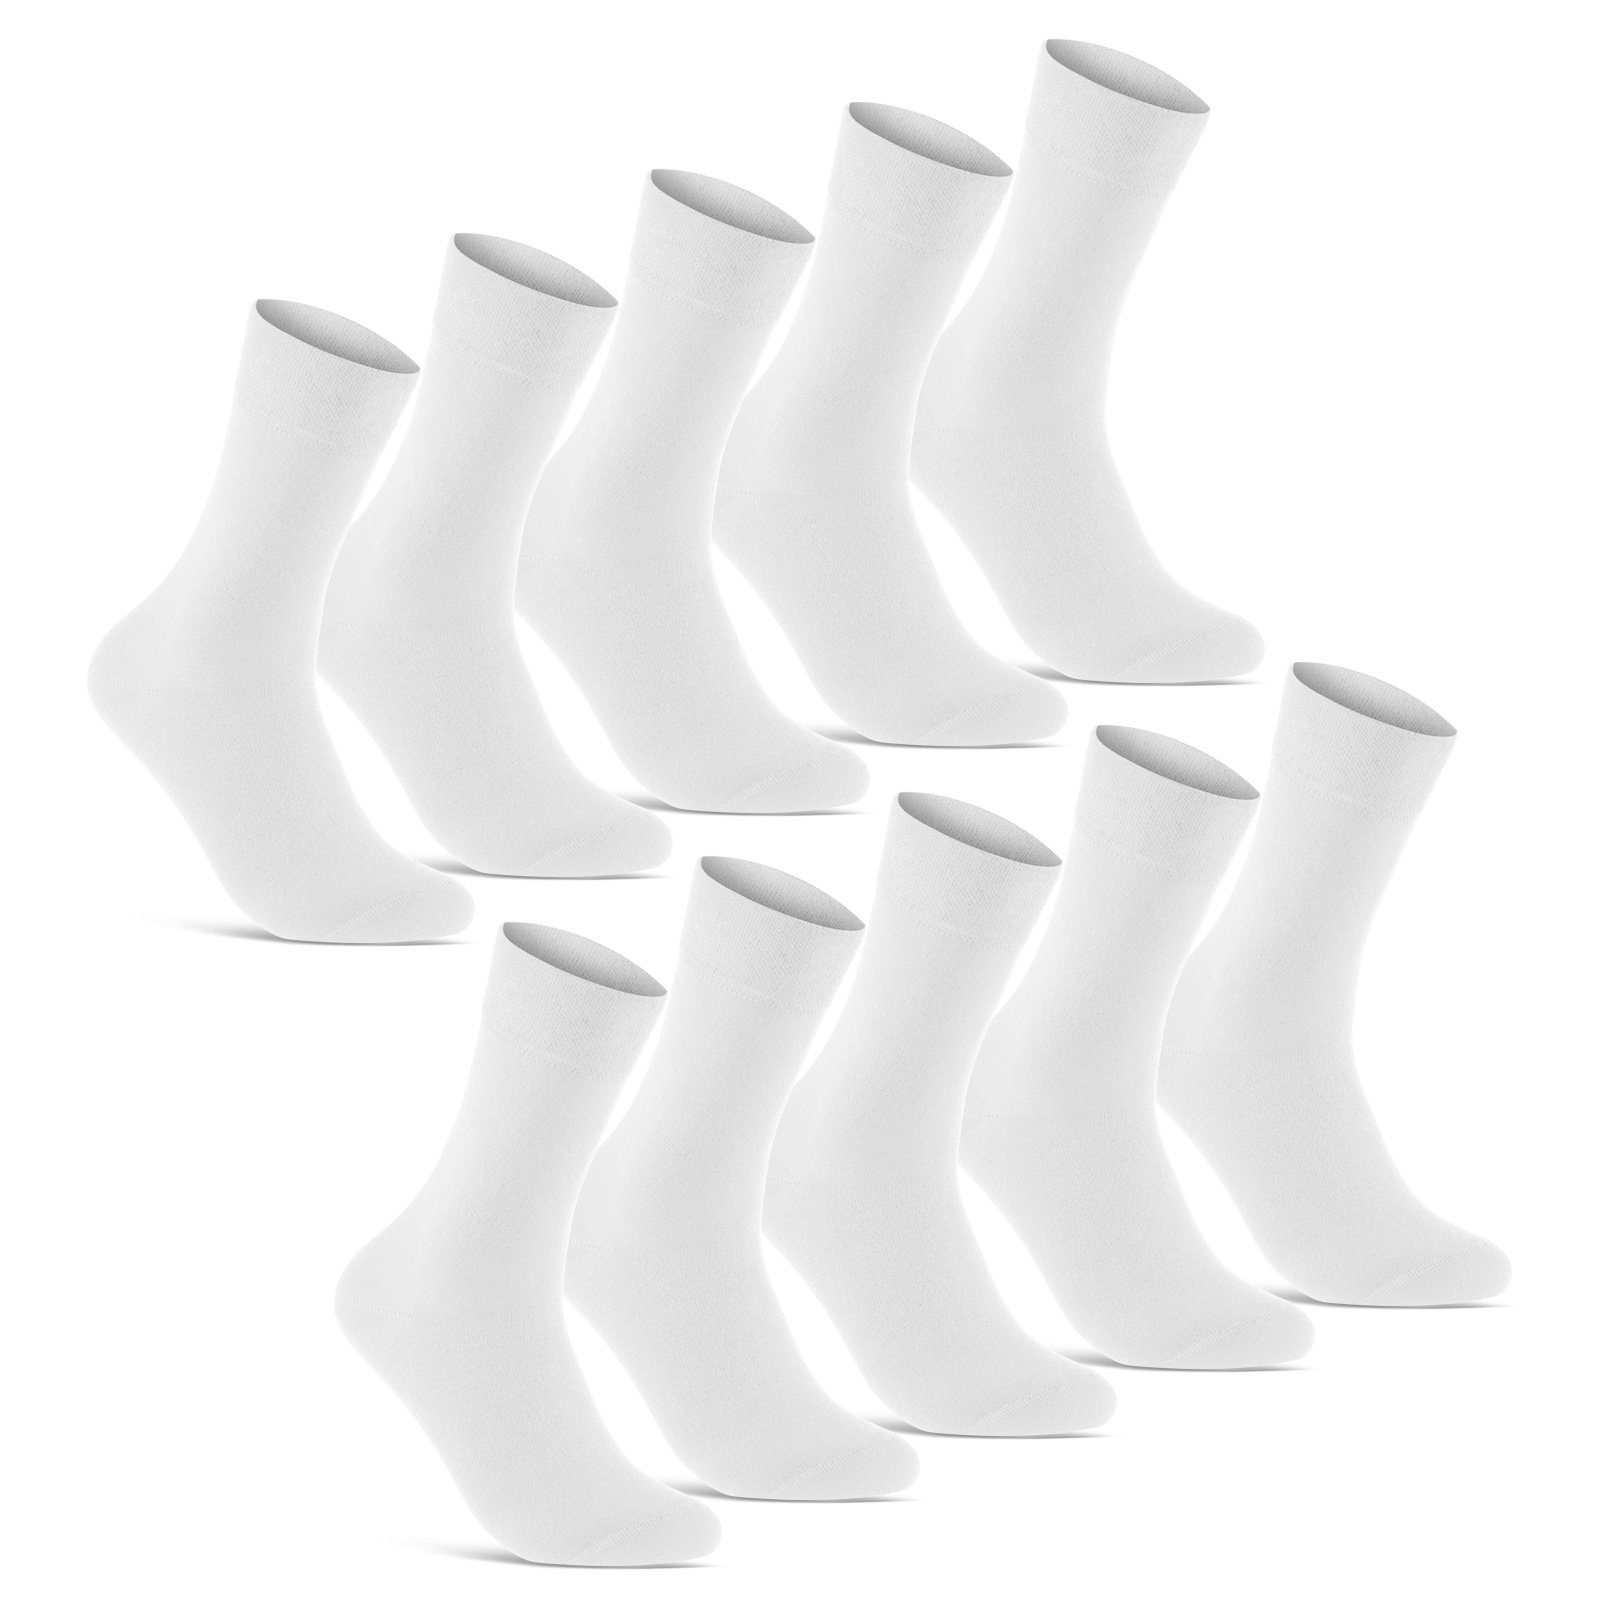 sockenkauf24 Socken 10 Paar Premium Socken Herren & Damen Komfort Business-Socken (Weiß, 10-Paar, 43-46) aus gekämmter Baumwolle mit Pique-Bund (Exclusive Line) - 70101T WP